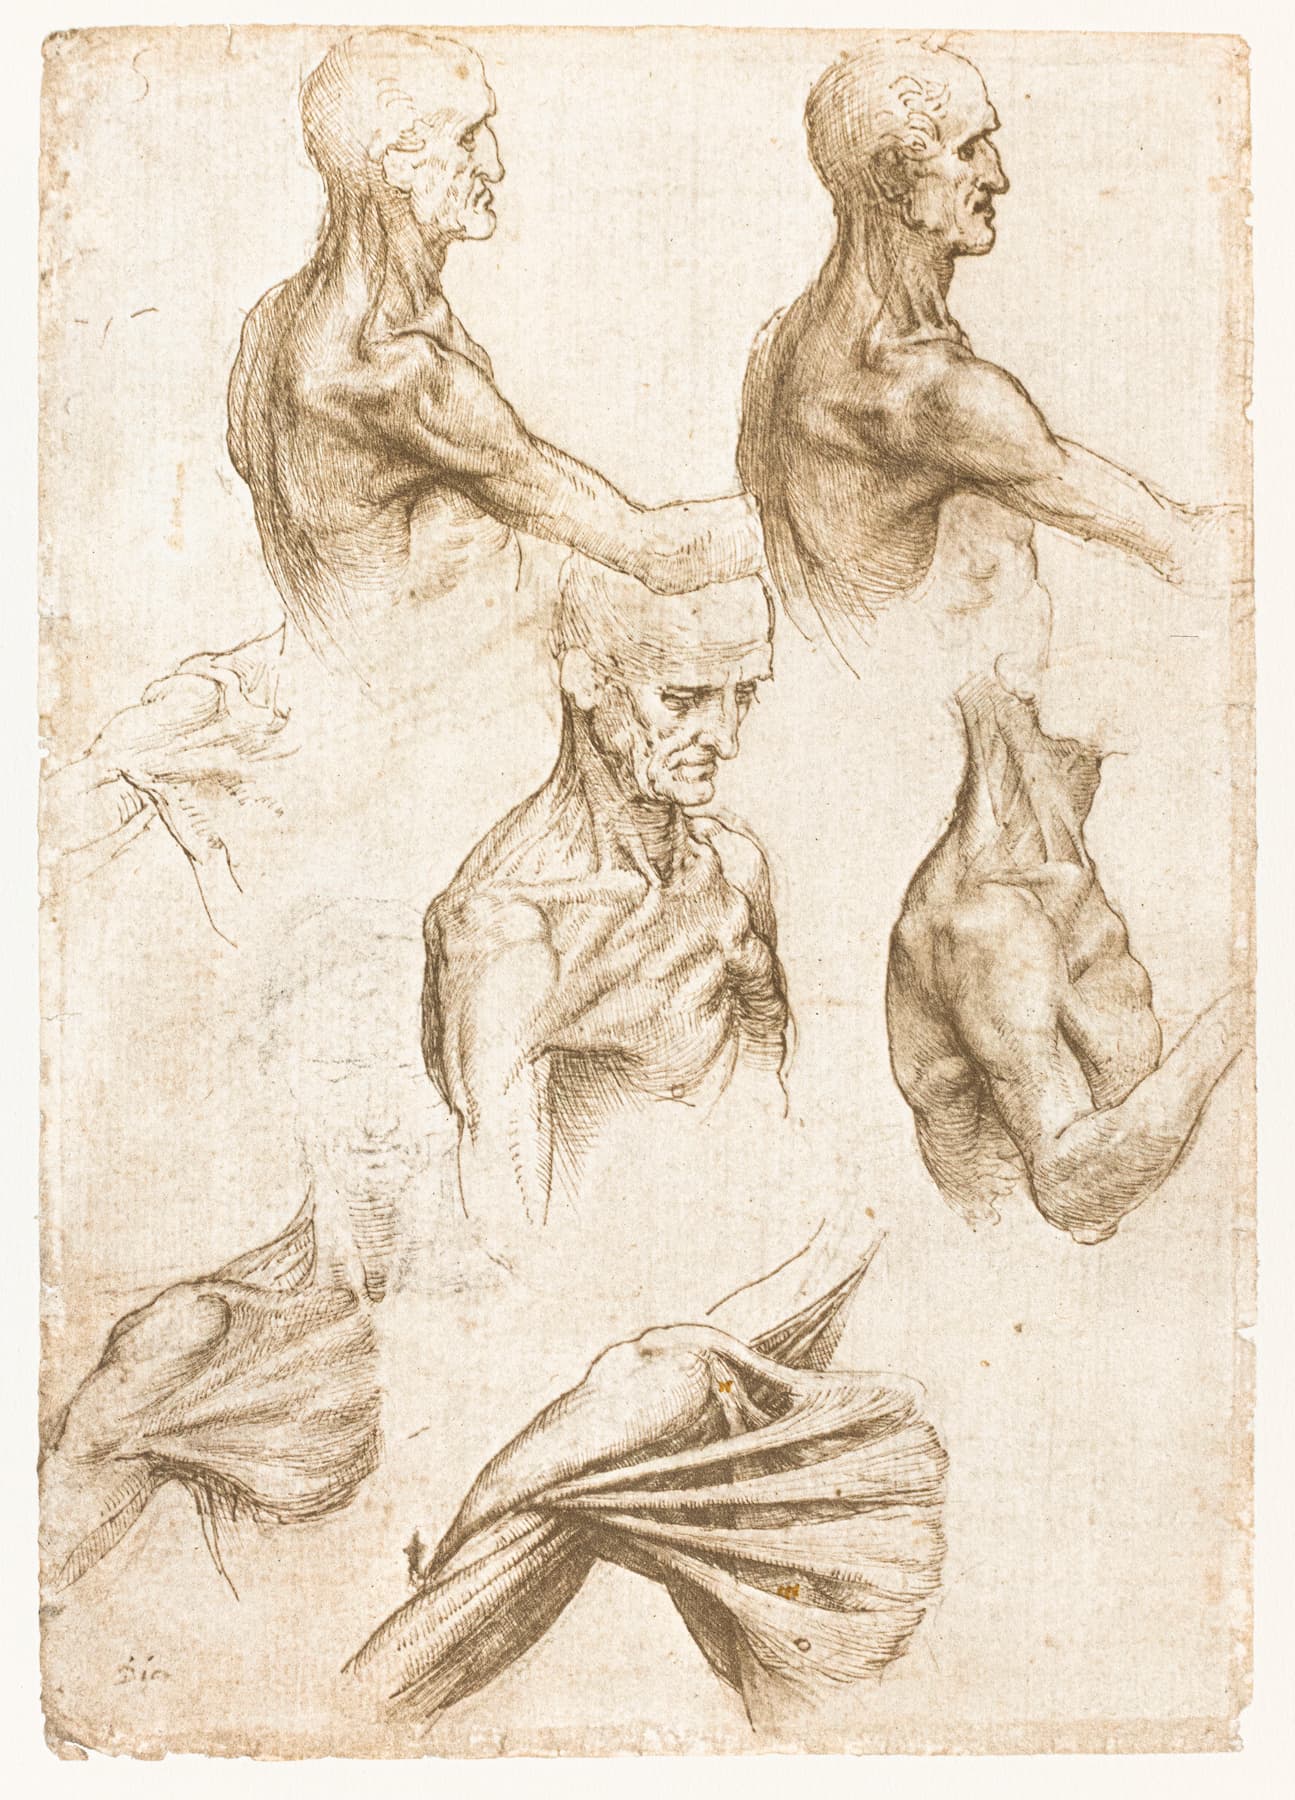 Léonard de Vinci, folio du codex de Windsor (fac-similé), Anatomie superficielle de l’épaule et du cou